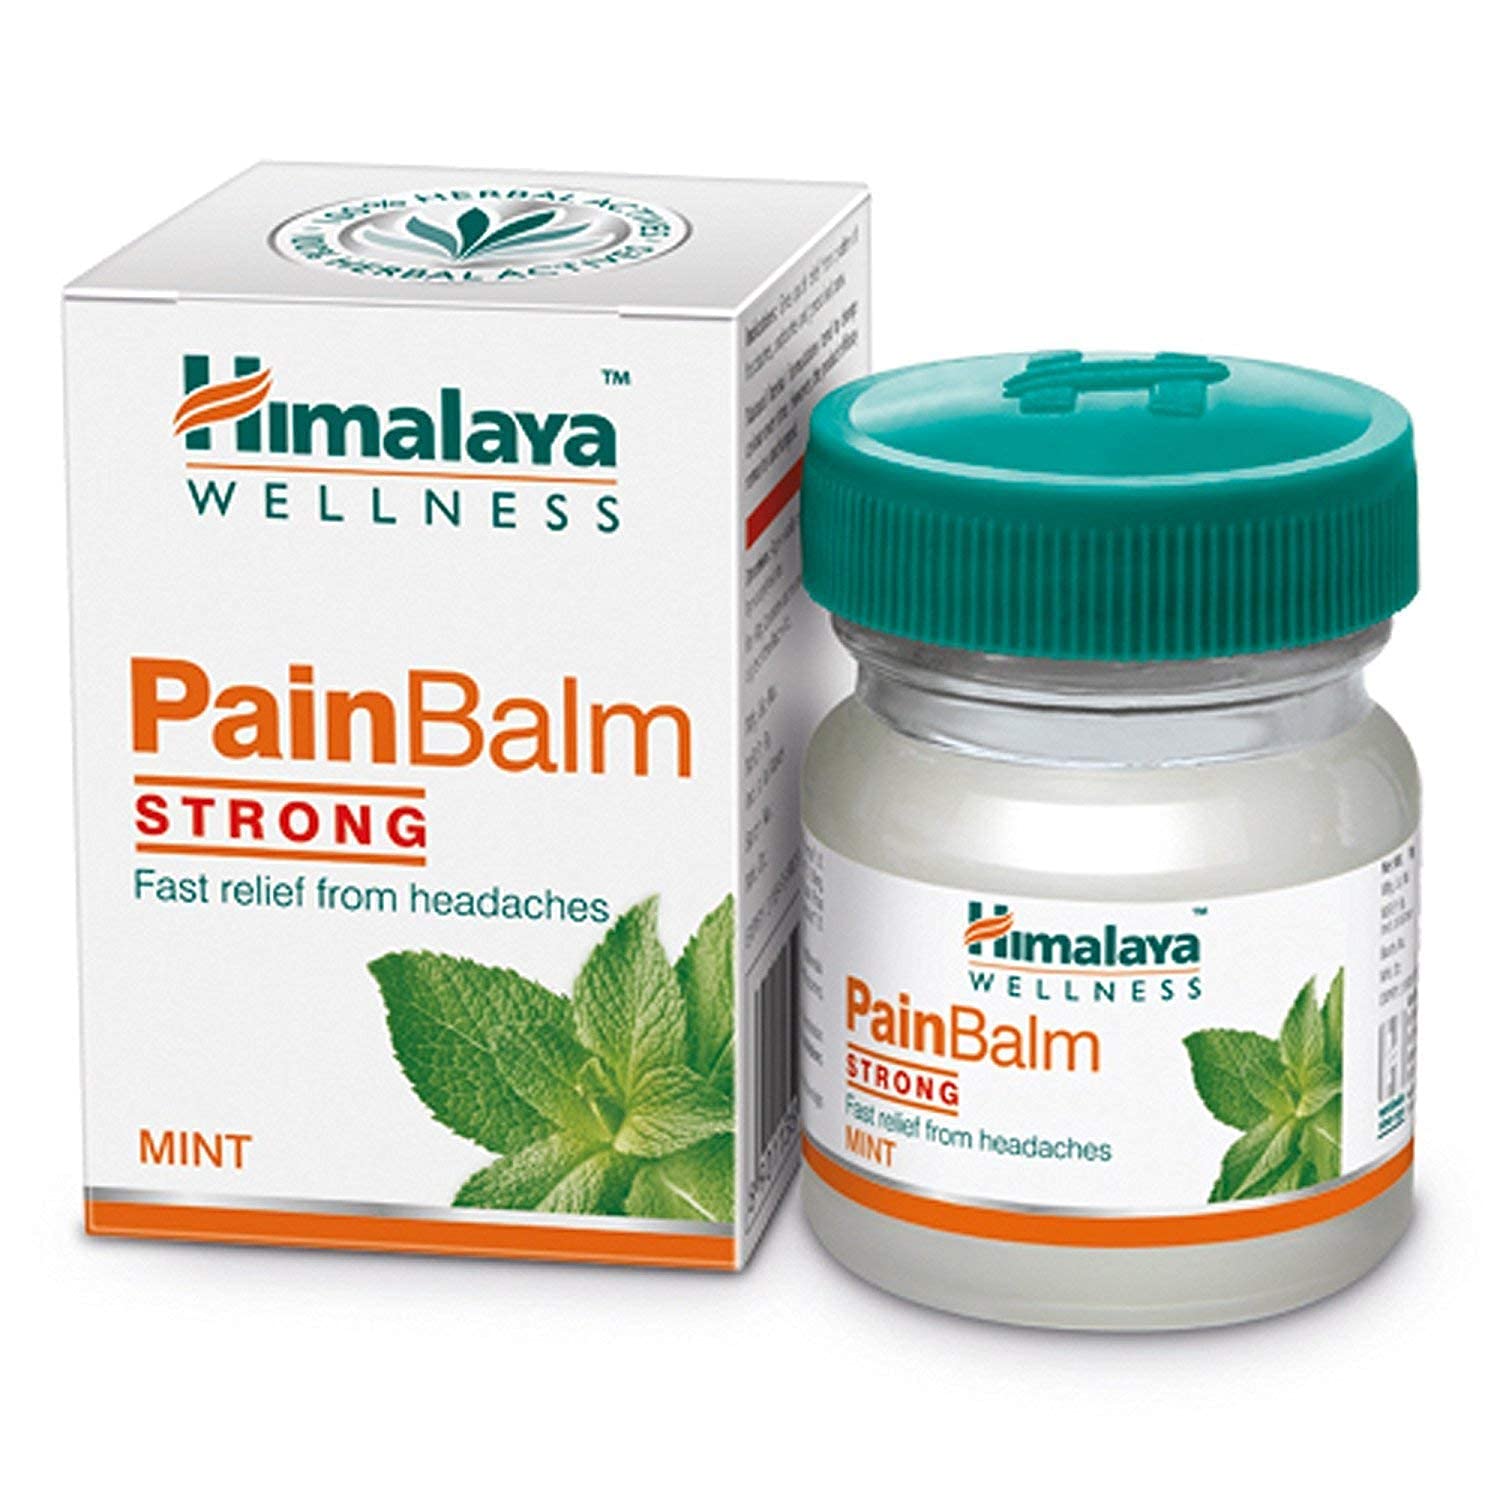 Himalayan wellness pain balm